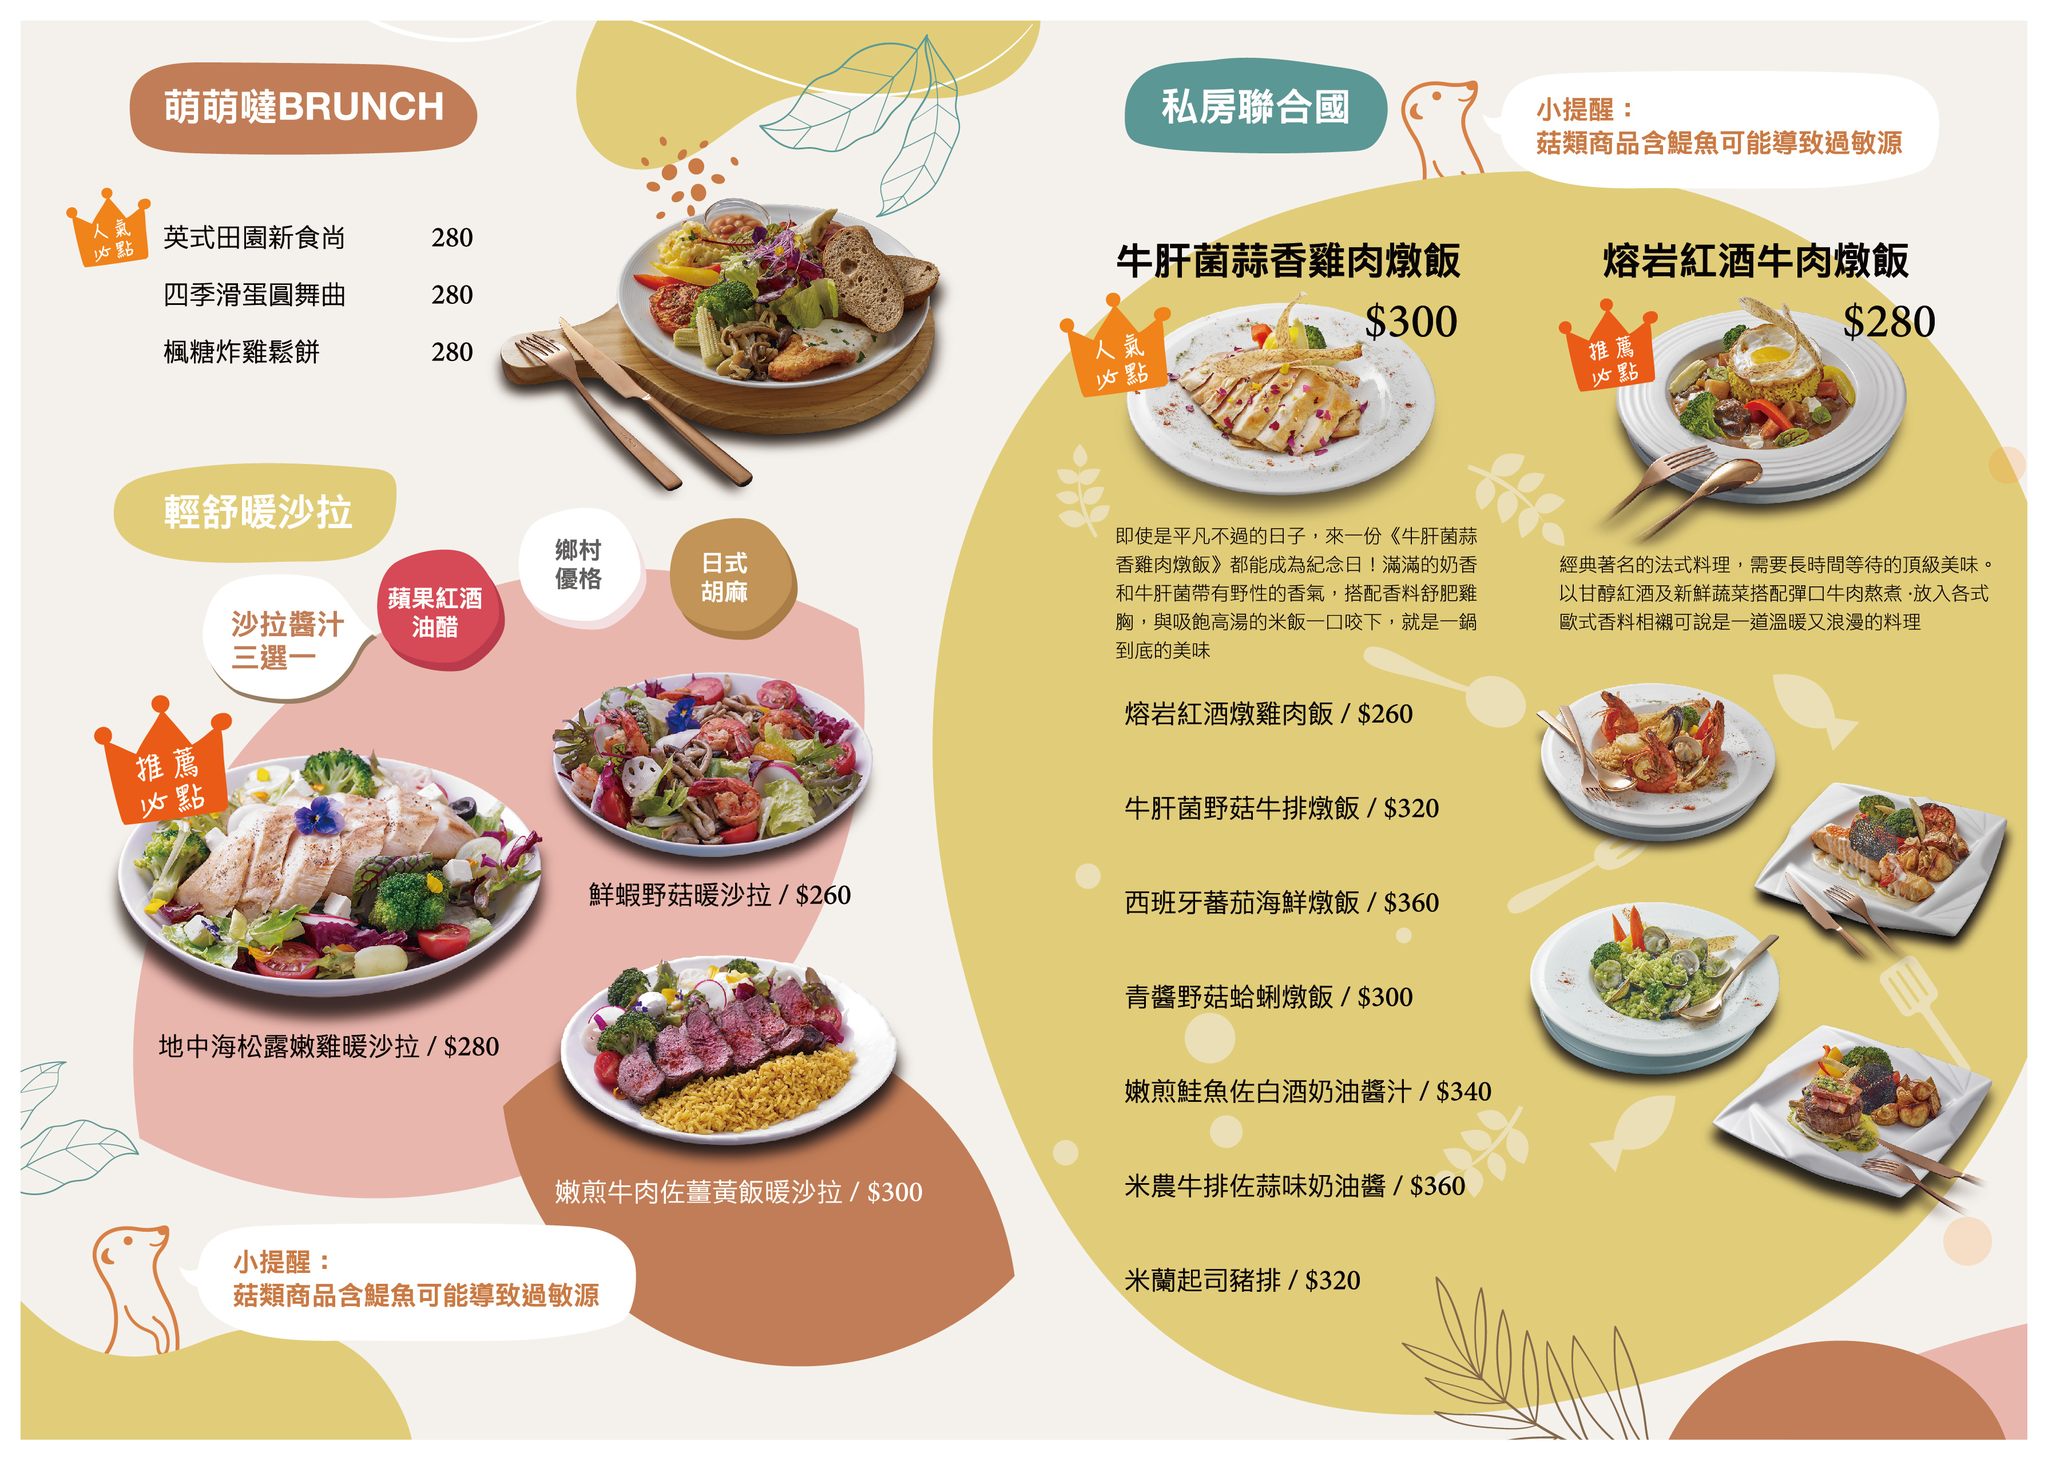 75度獴主題餐廳,動物主題親子公園,台北主題餐廳,台北寵物住宿,台北寵物咖啡廳,台北美食,狐獴主題餐廳